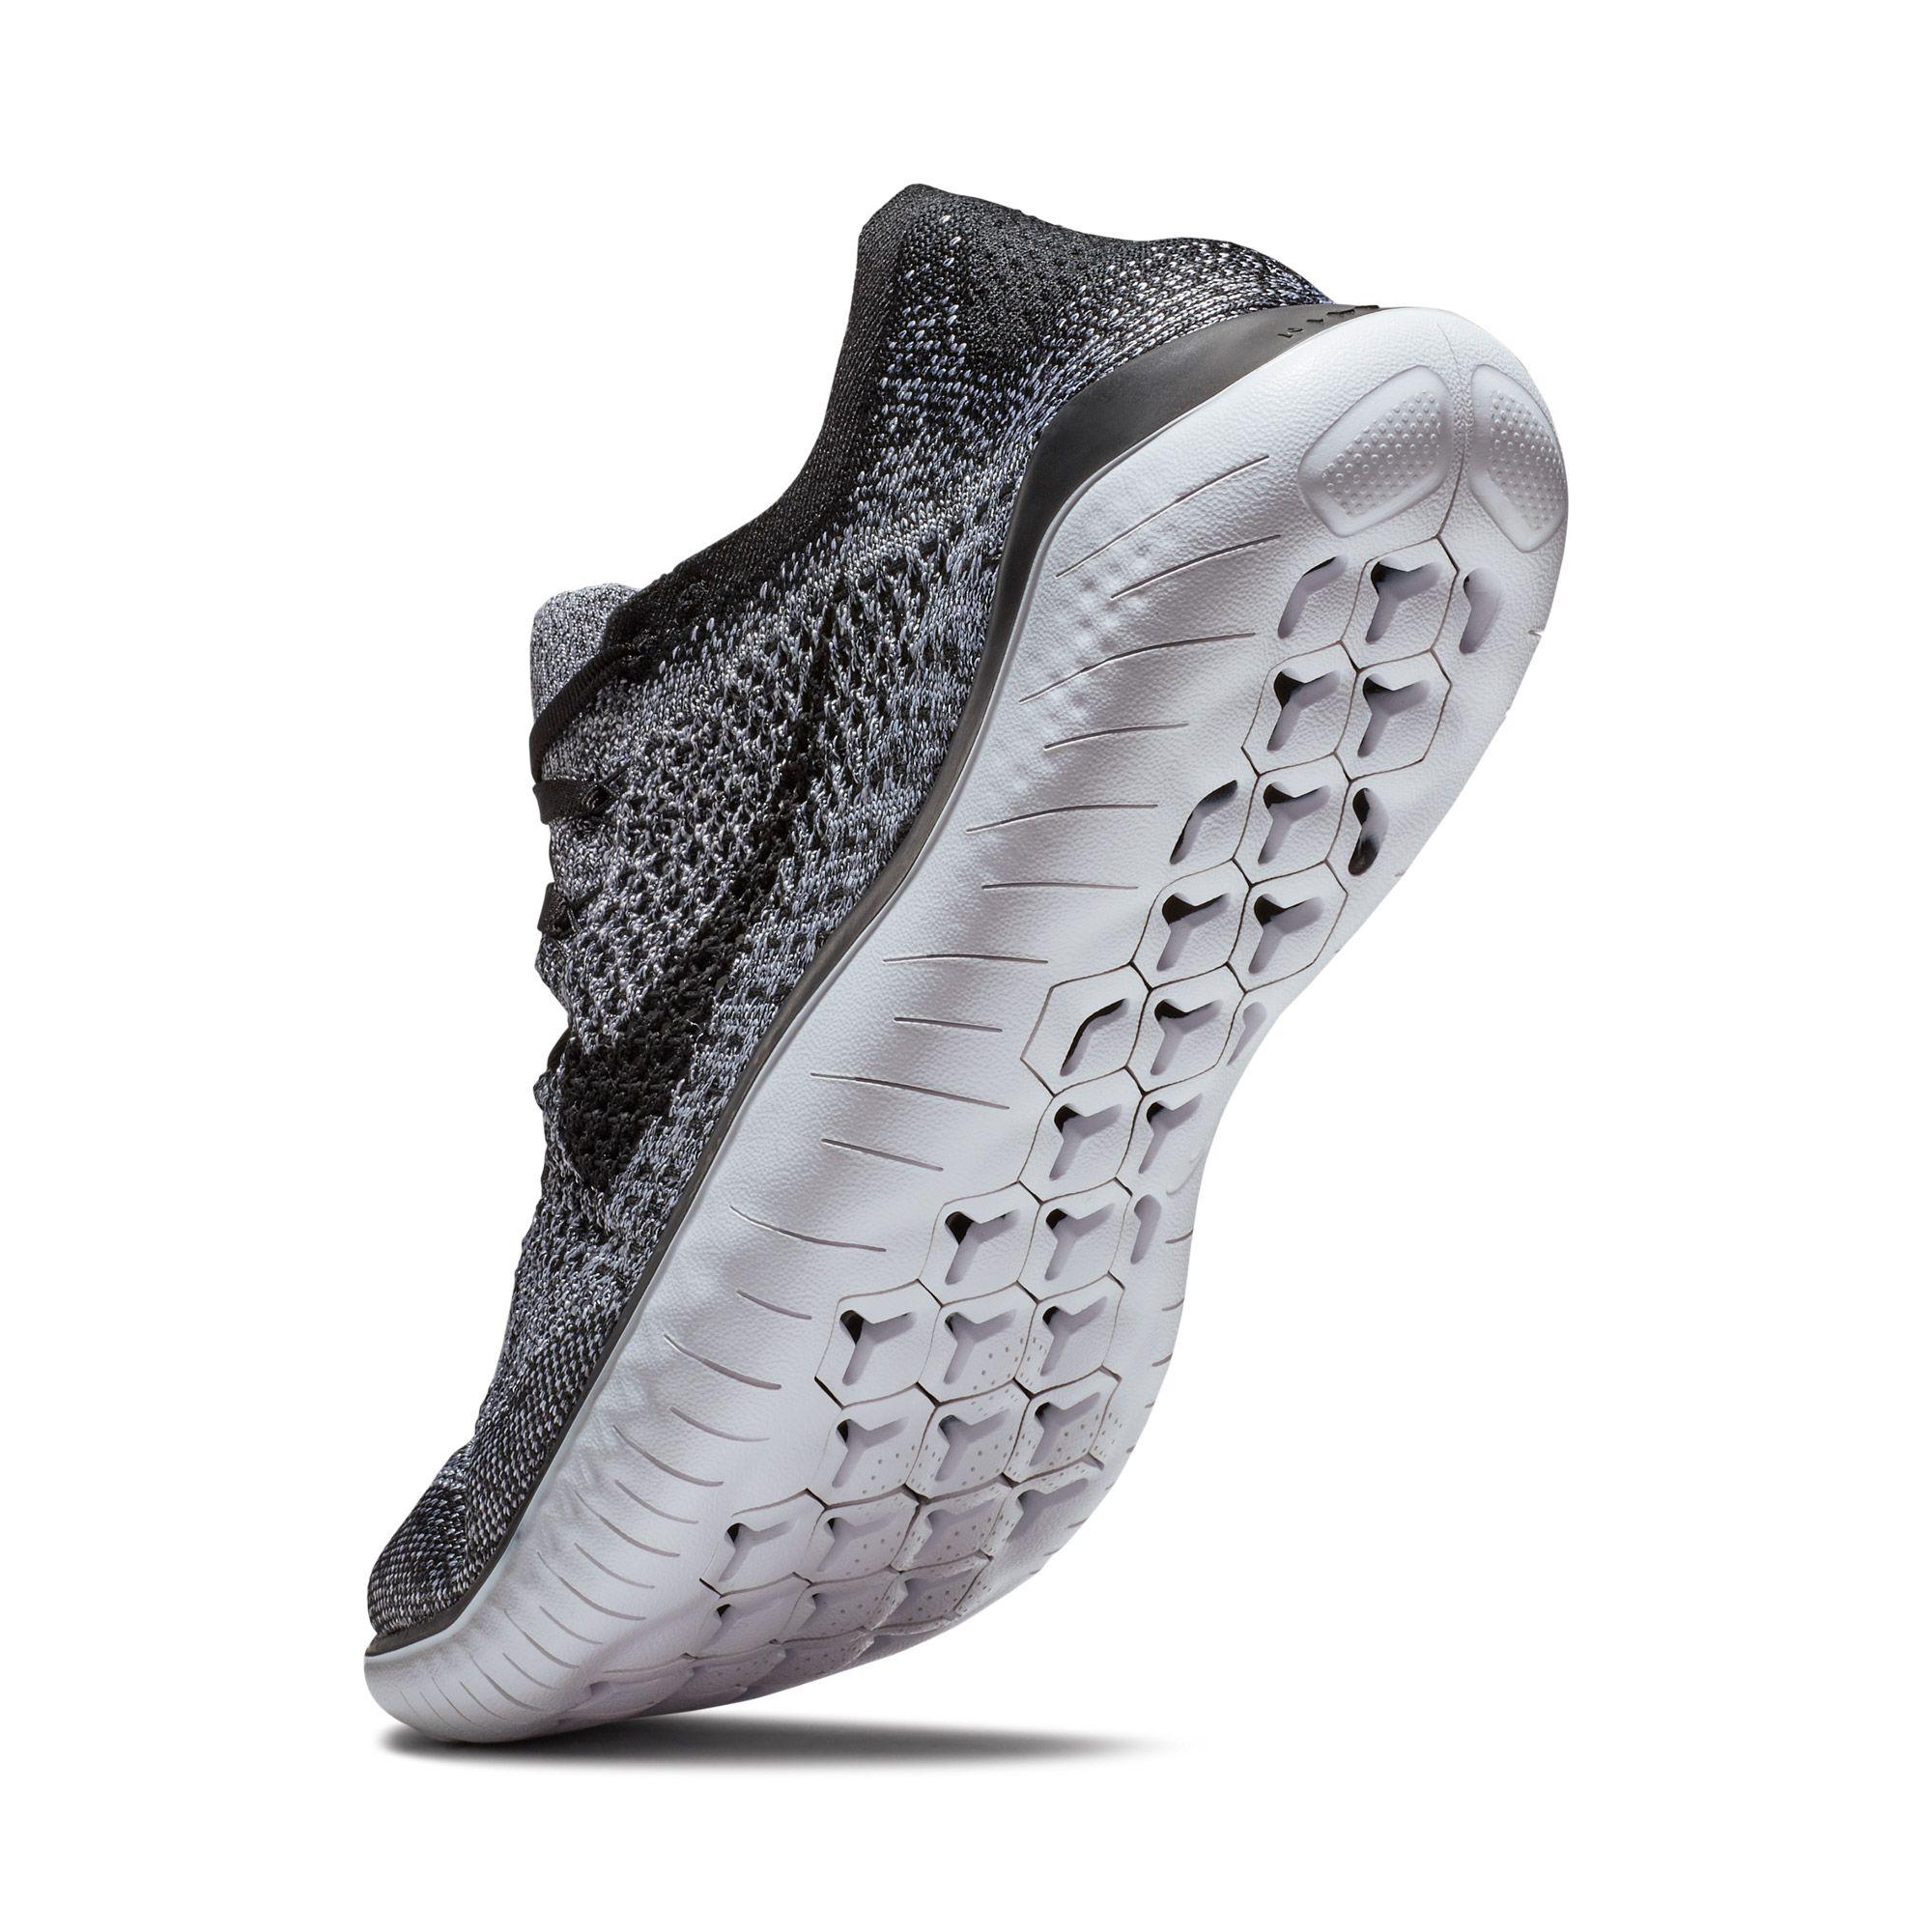 Nike Free Rn Flyknit 2018 Running Shoes in Black/White/Black (Black) for  Men - Lyst